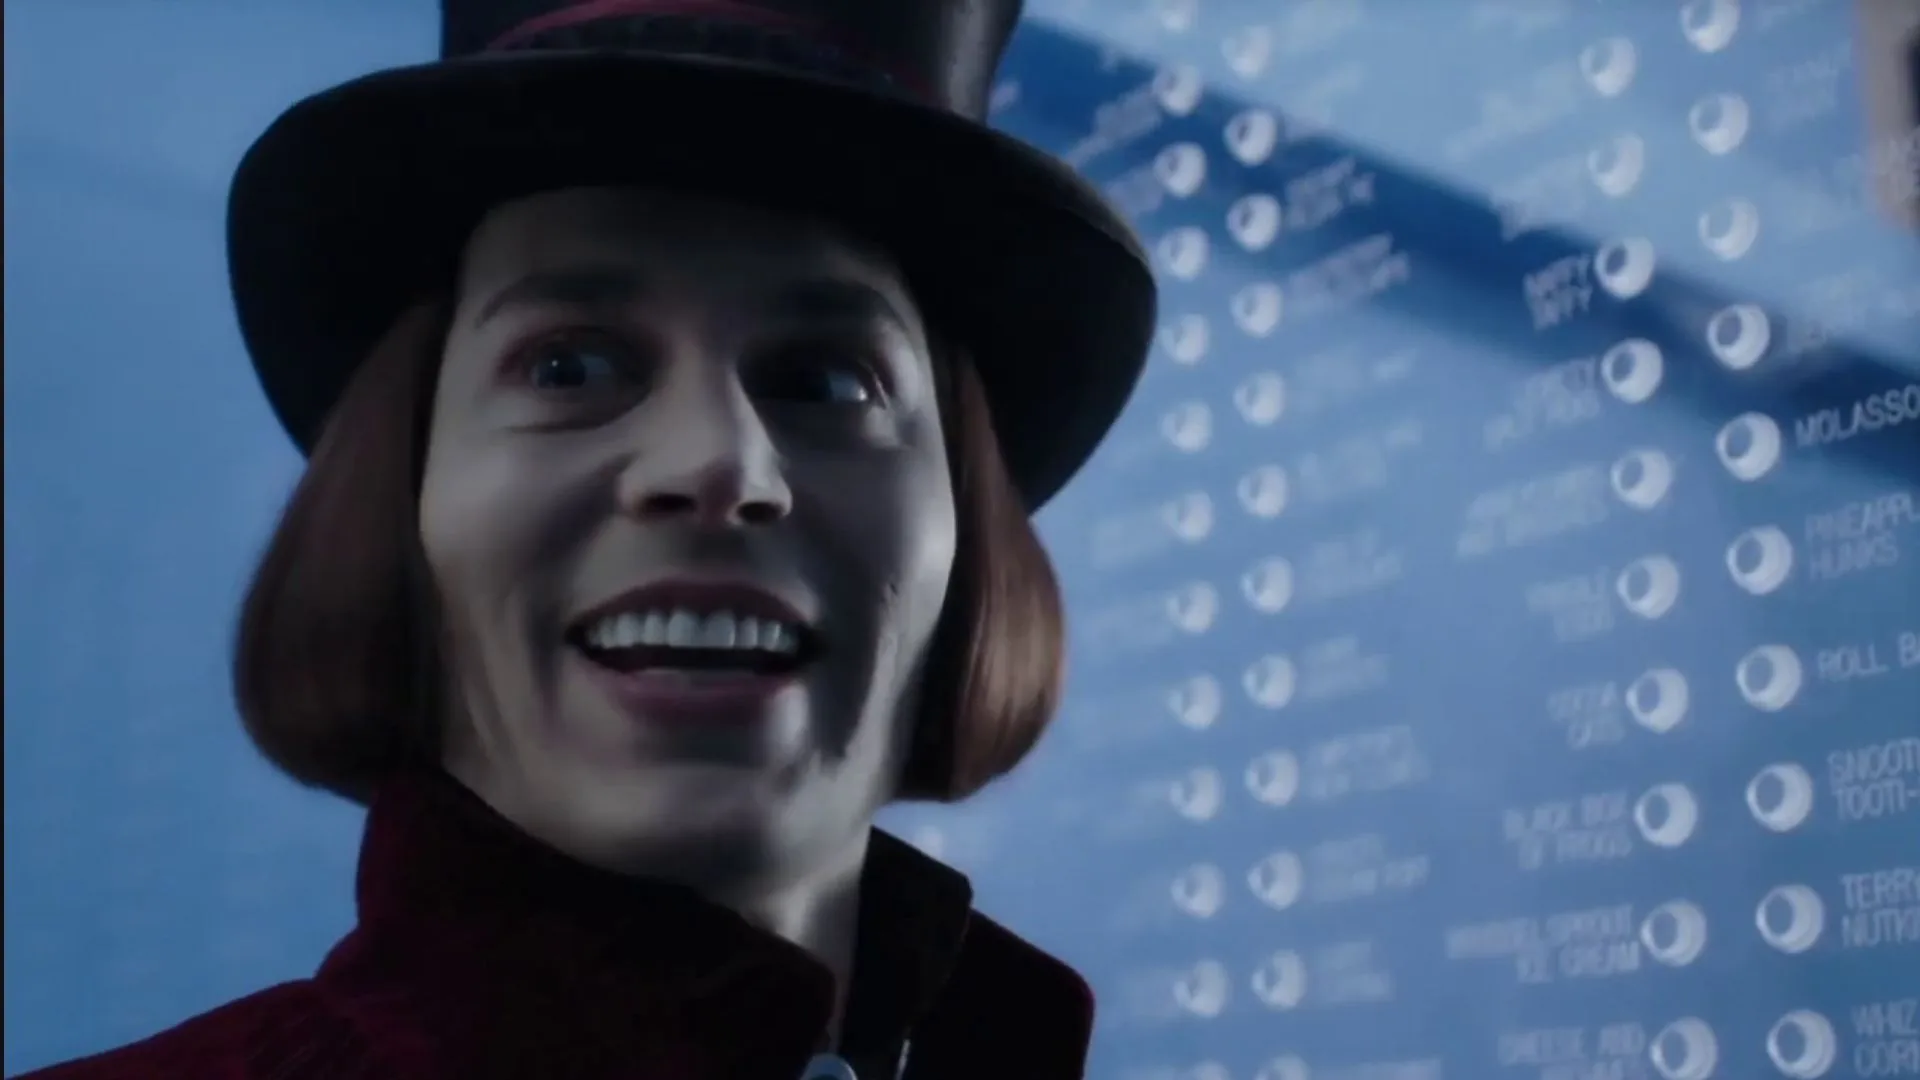 Se debate por la mejor interpretación de Wonka,
el mítico personaje del sombrero y el bastón creado por Dahl, 
que ha sido actuado por 3 hombres diferentes.